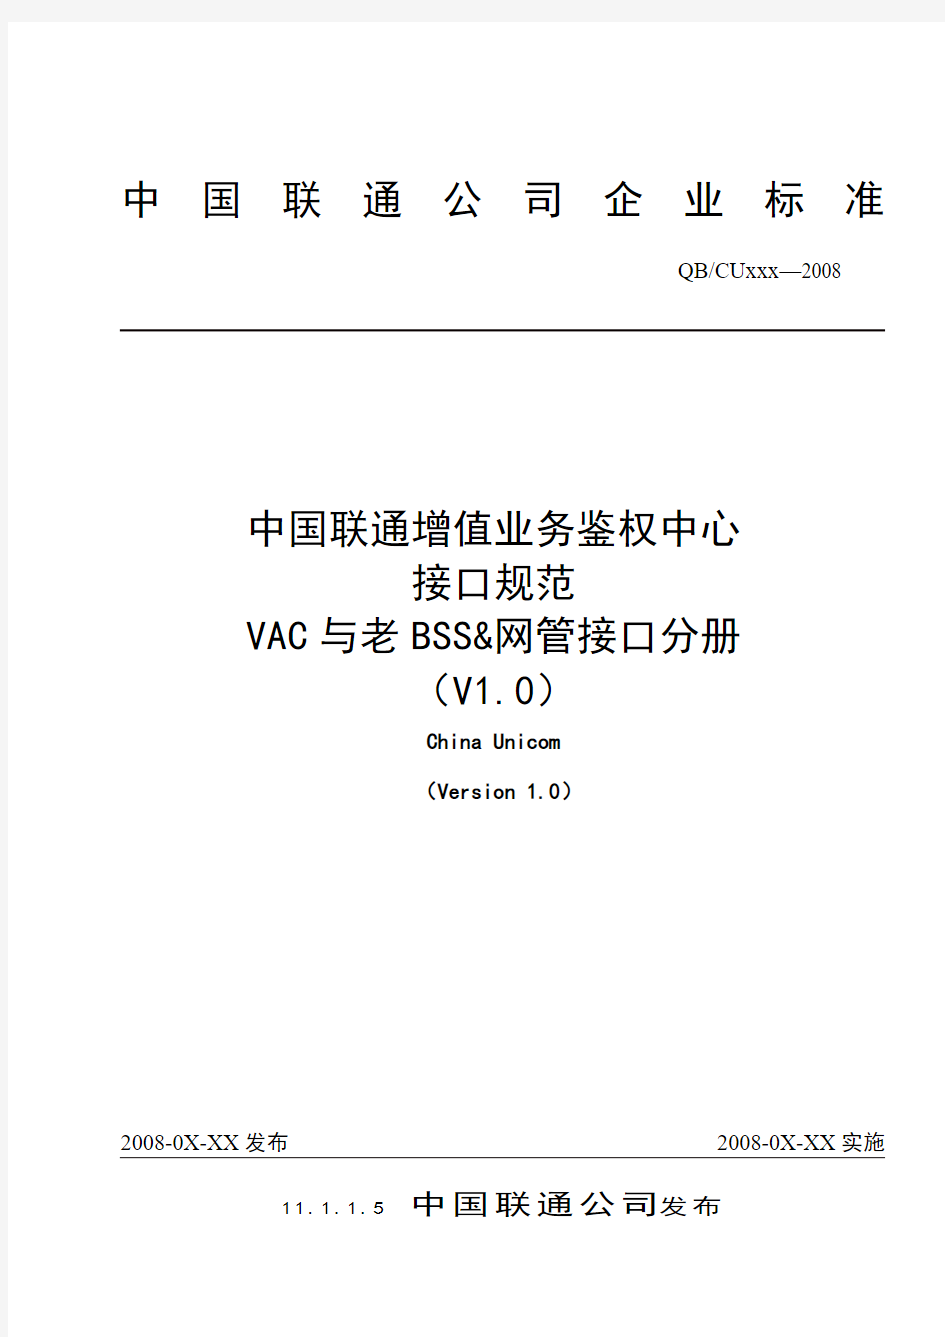 中国联通增值业务鉴权中心接口规范-VAC与老BSS接口分册-1212